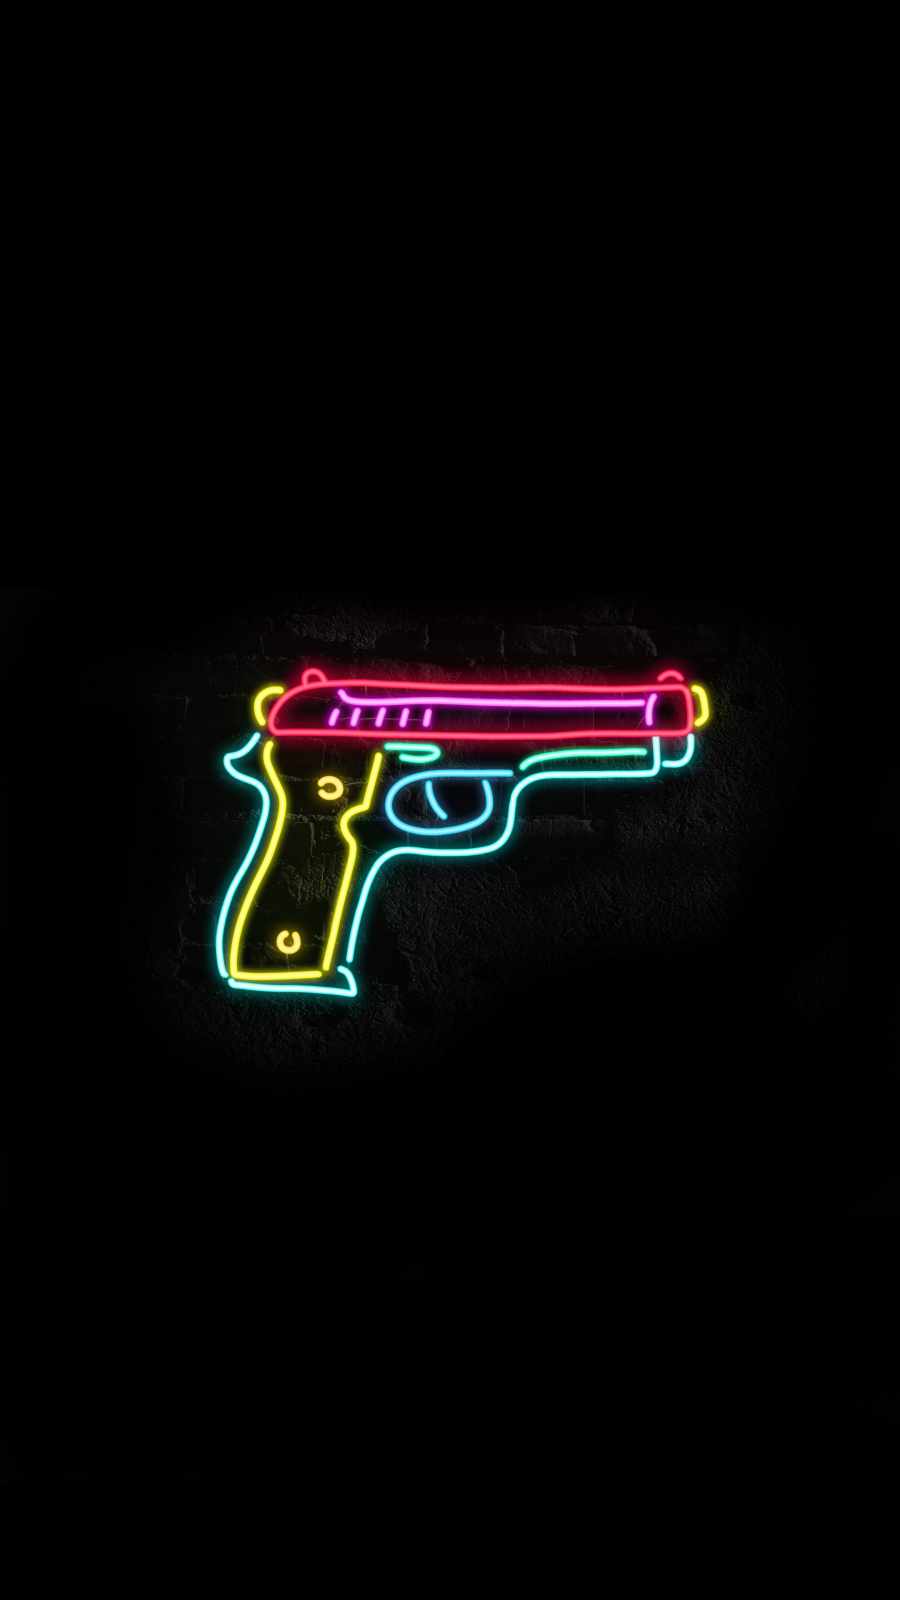 A neon gun on black background - Neon